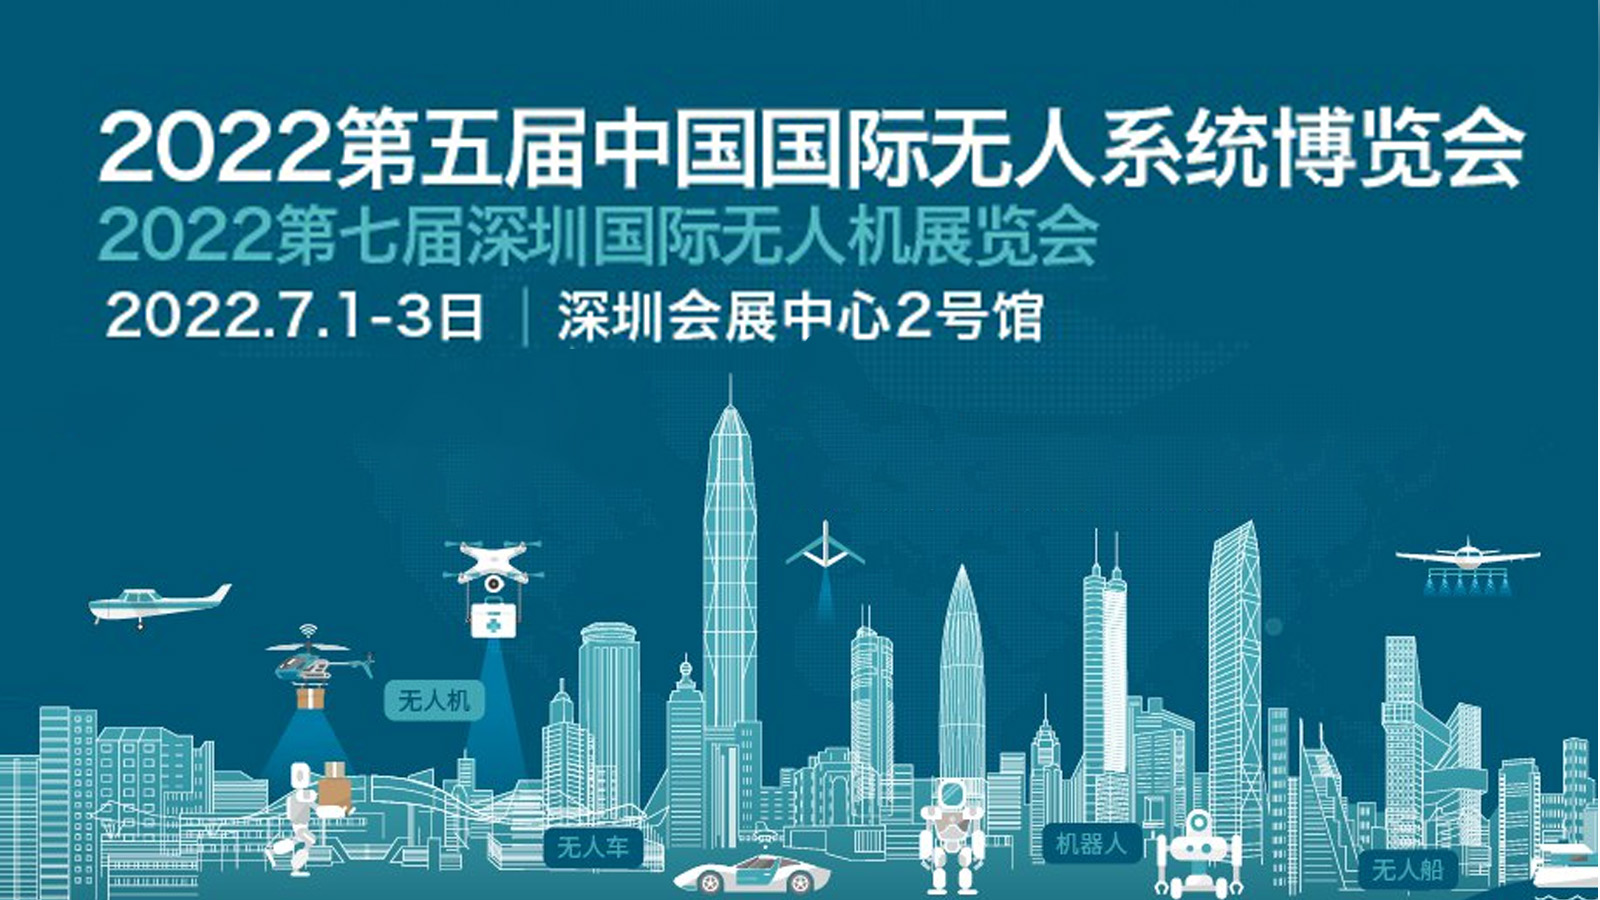 2022世界无人机大会暨深圳国际无人机展览会